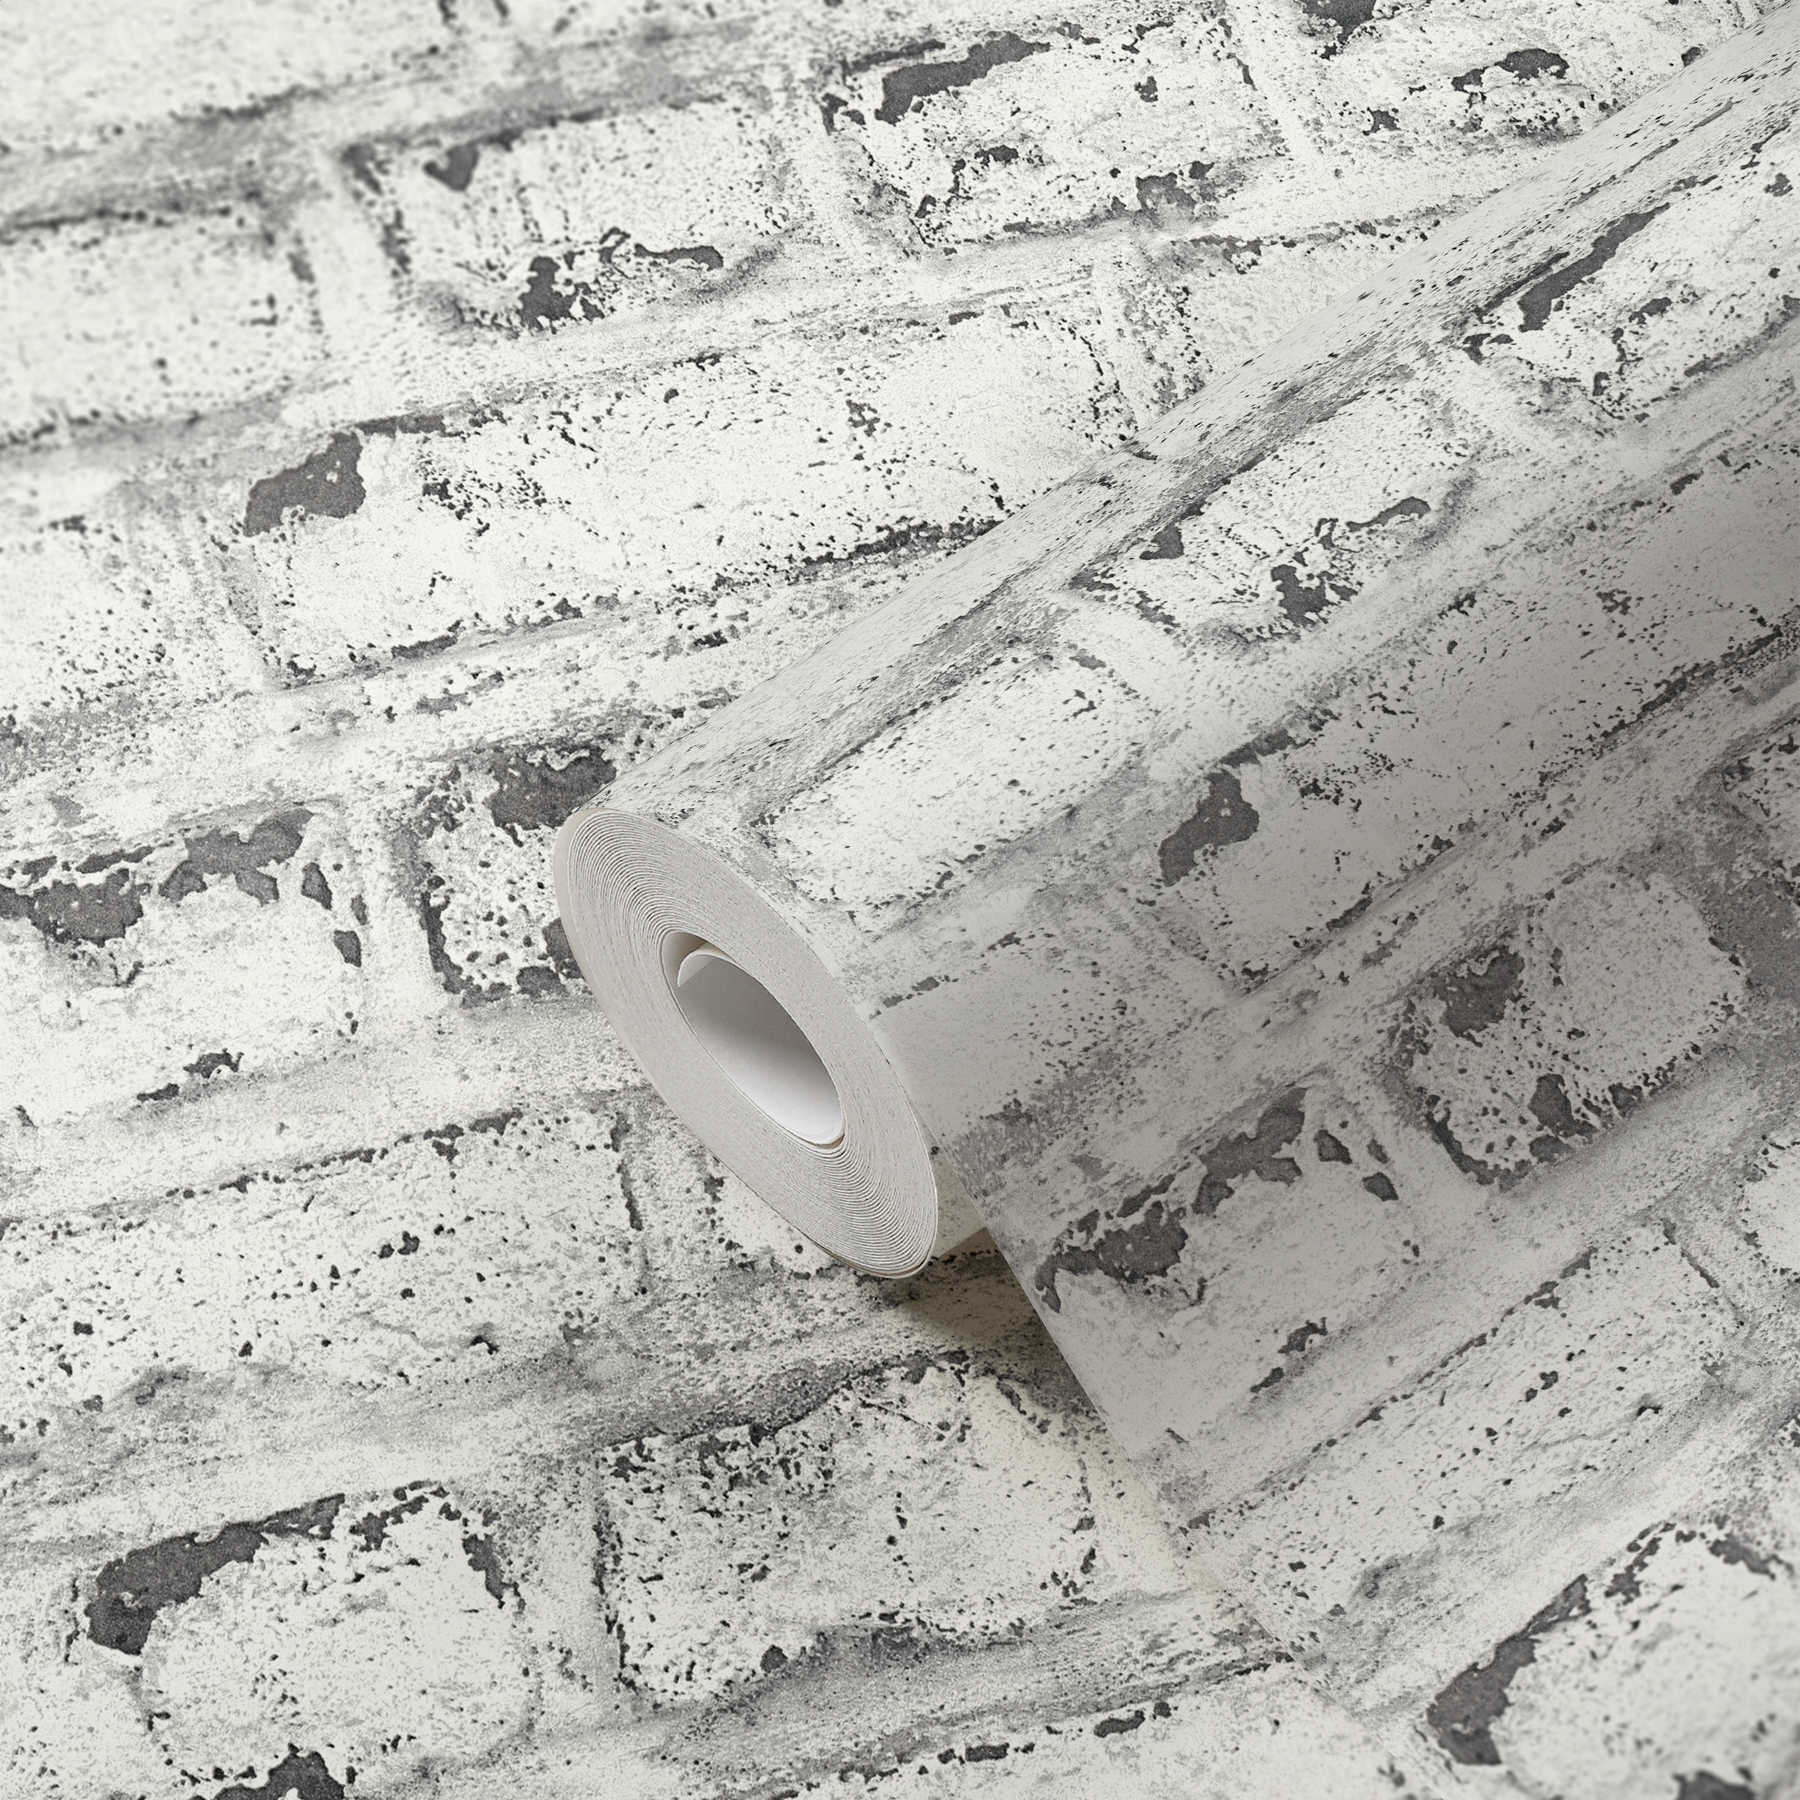             Steenbehang witte bakstenen muur, industriële stijl - wit, grijs
        